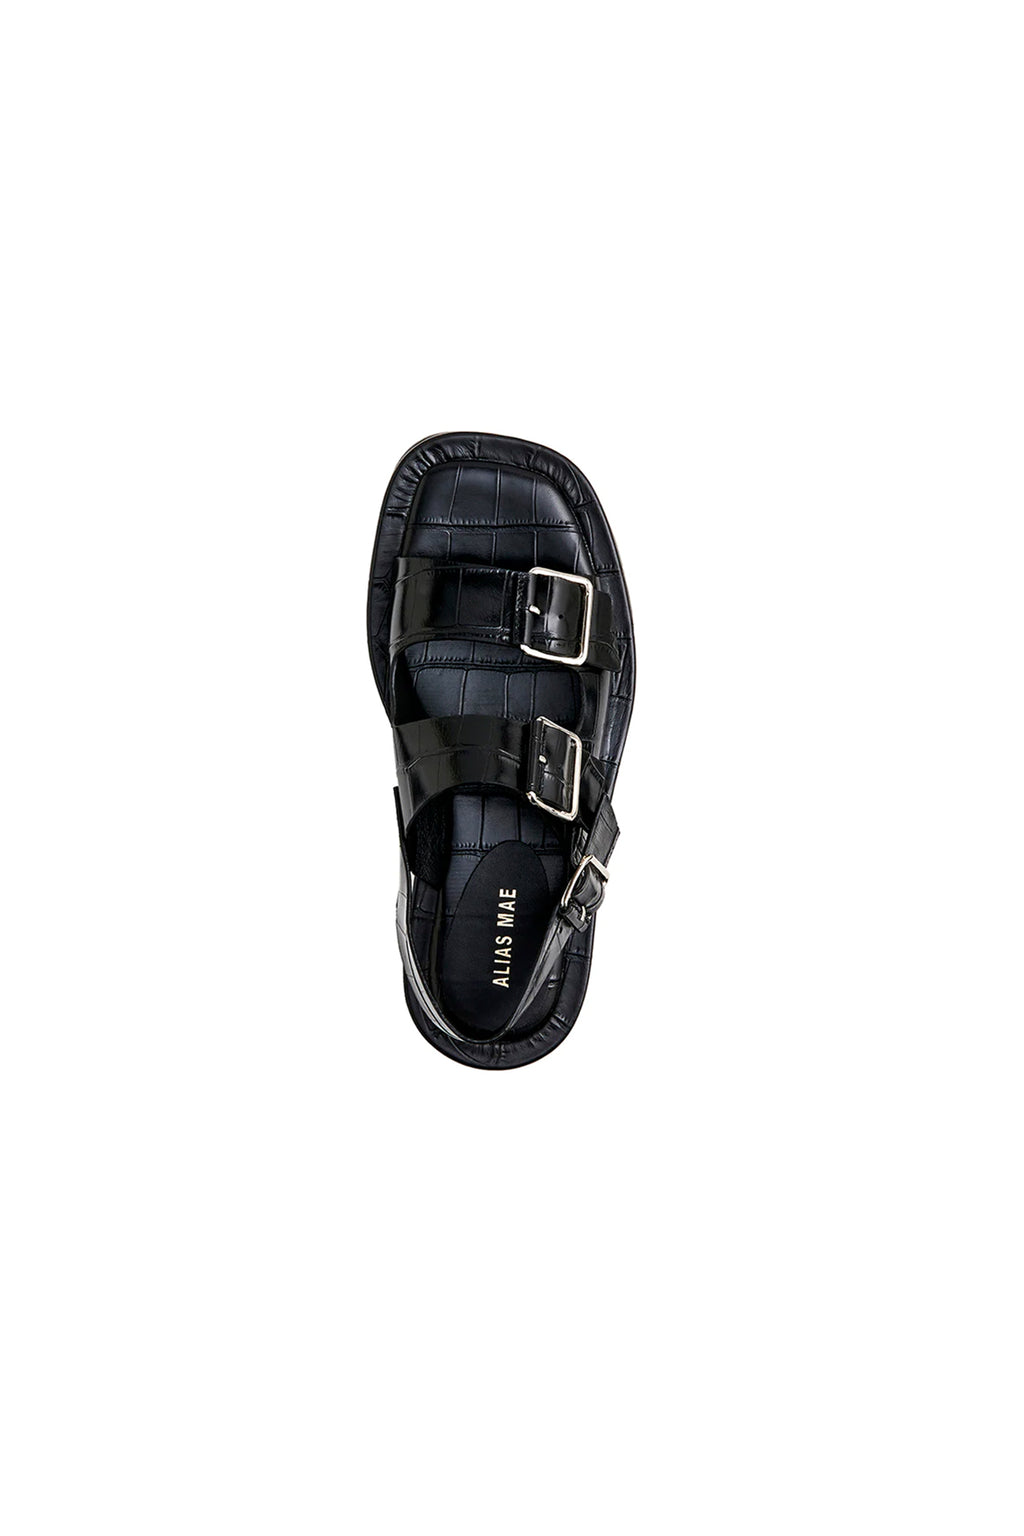 Alias Mae - Keri Sandal - Black Leather